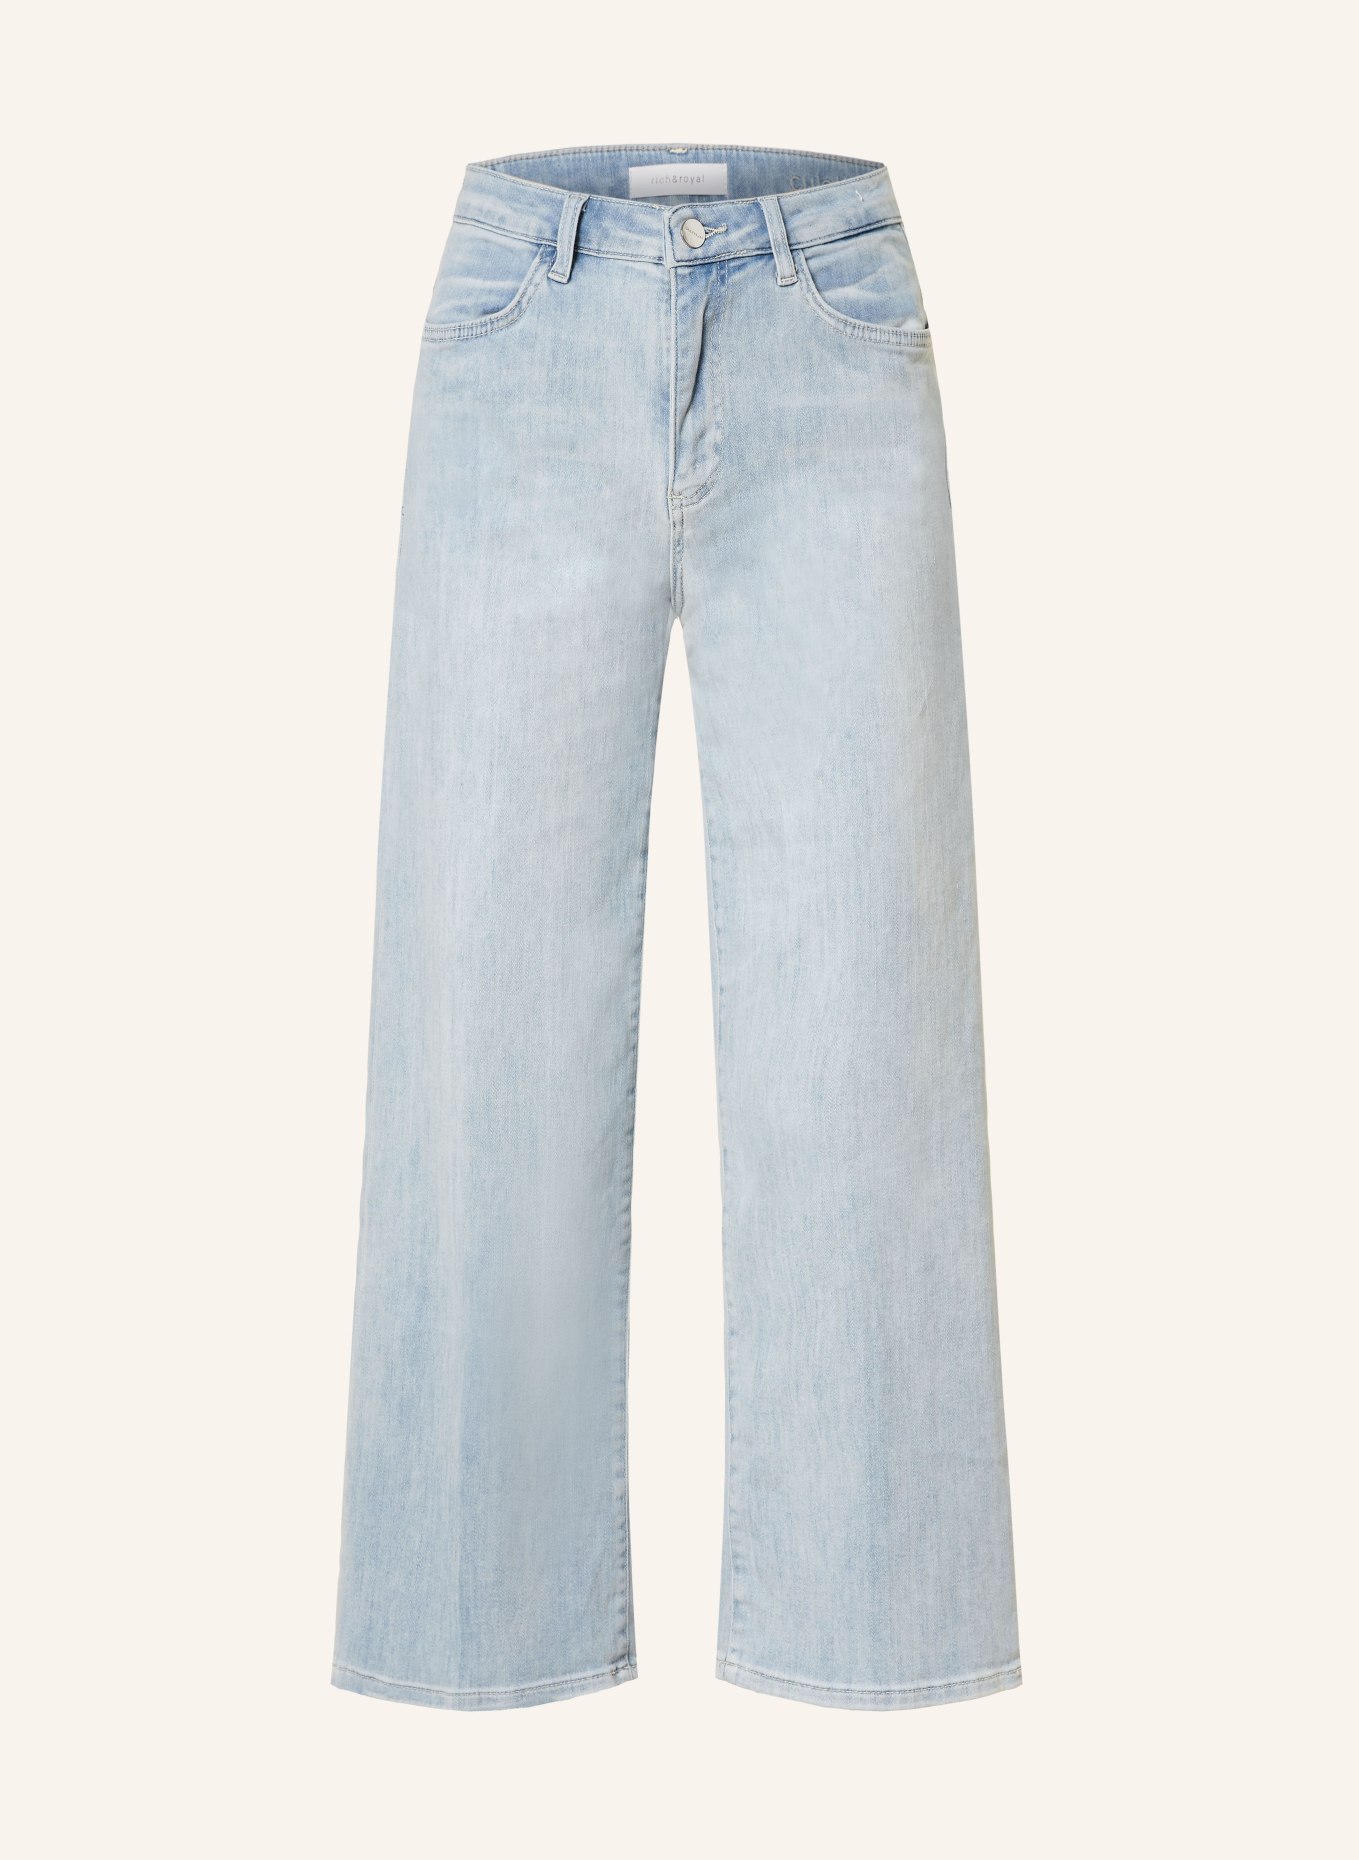 rich&royal 7/8 jeans, Color: 700 DENIM BLUE (Image 1)